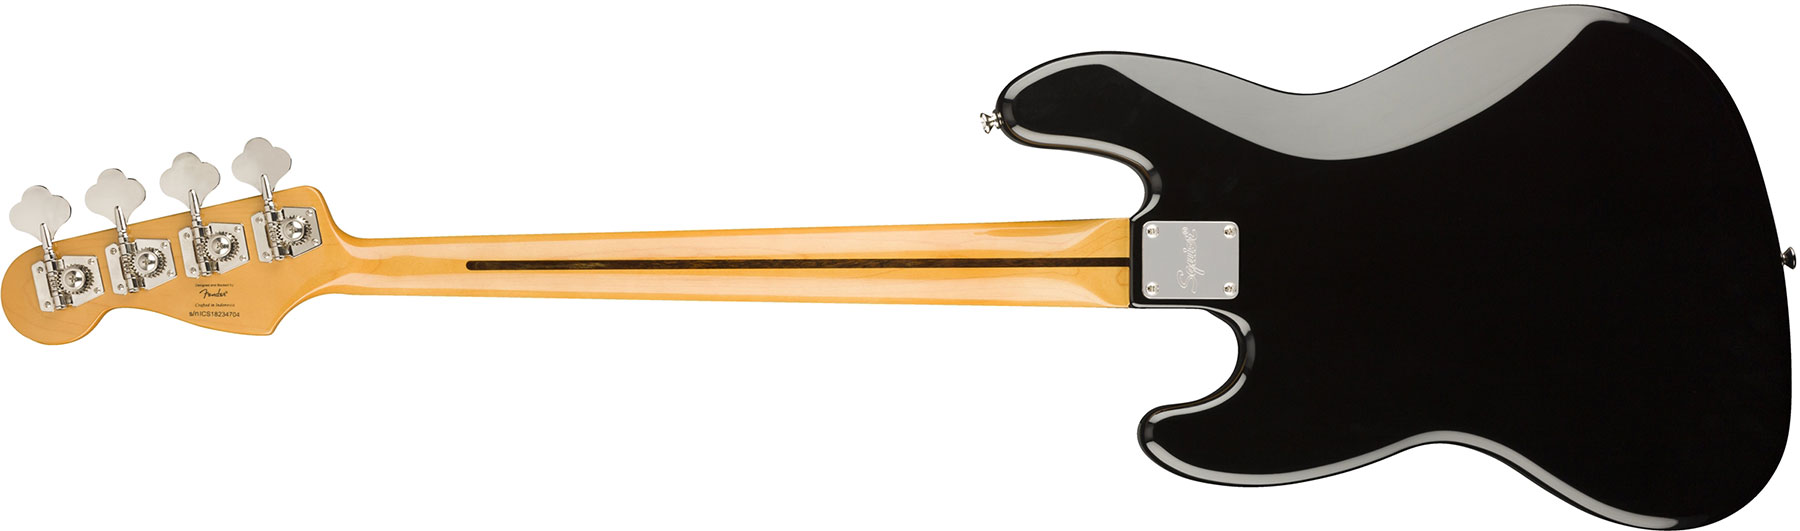 Squier Jazz Bass Classic Vibe 60s Fretless 2019 Lau - 3-color Sunburst - Basse Électrique Solid Body - Variation 1